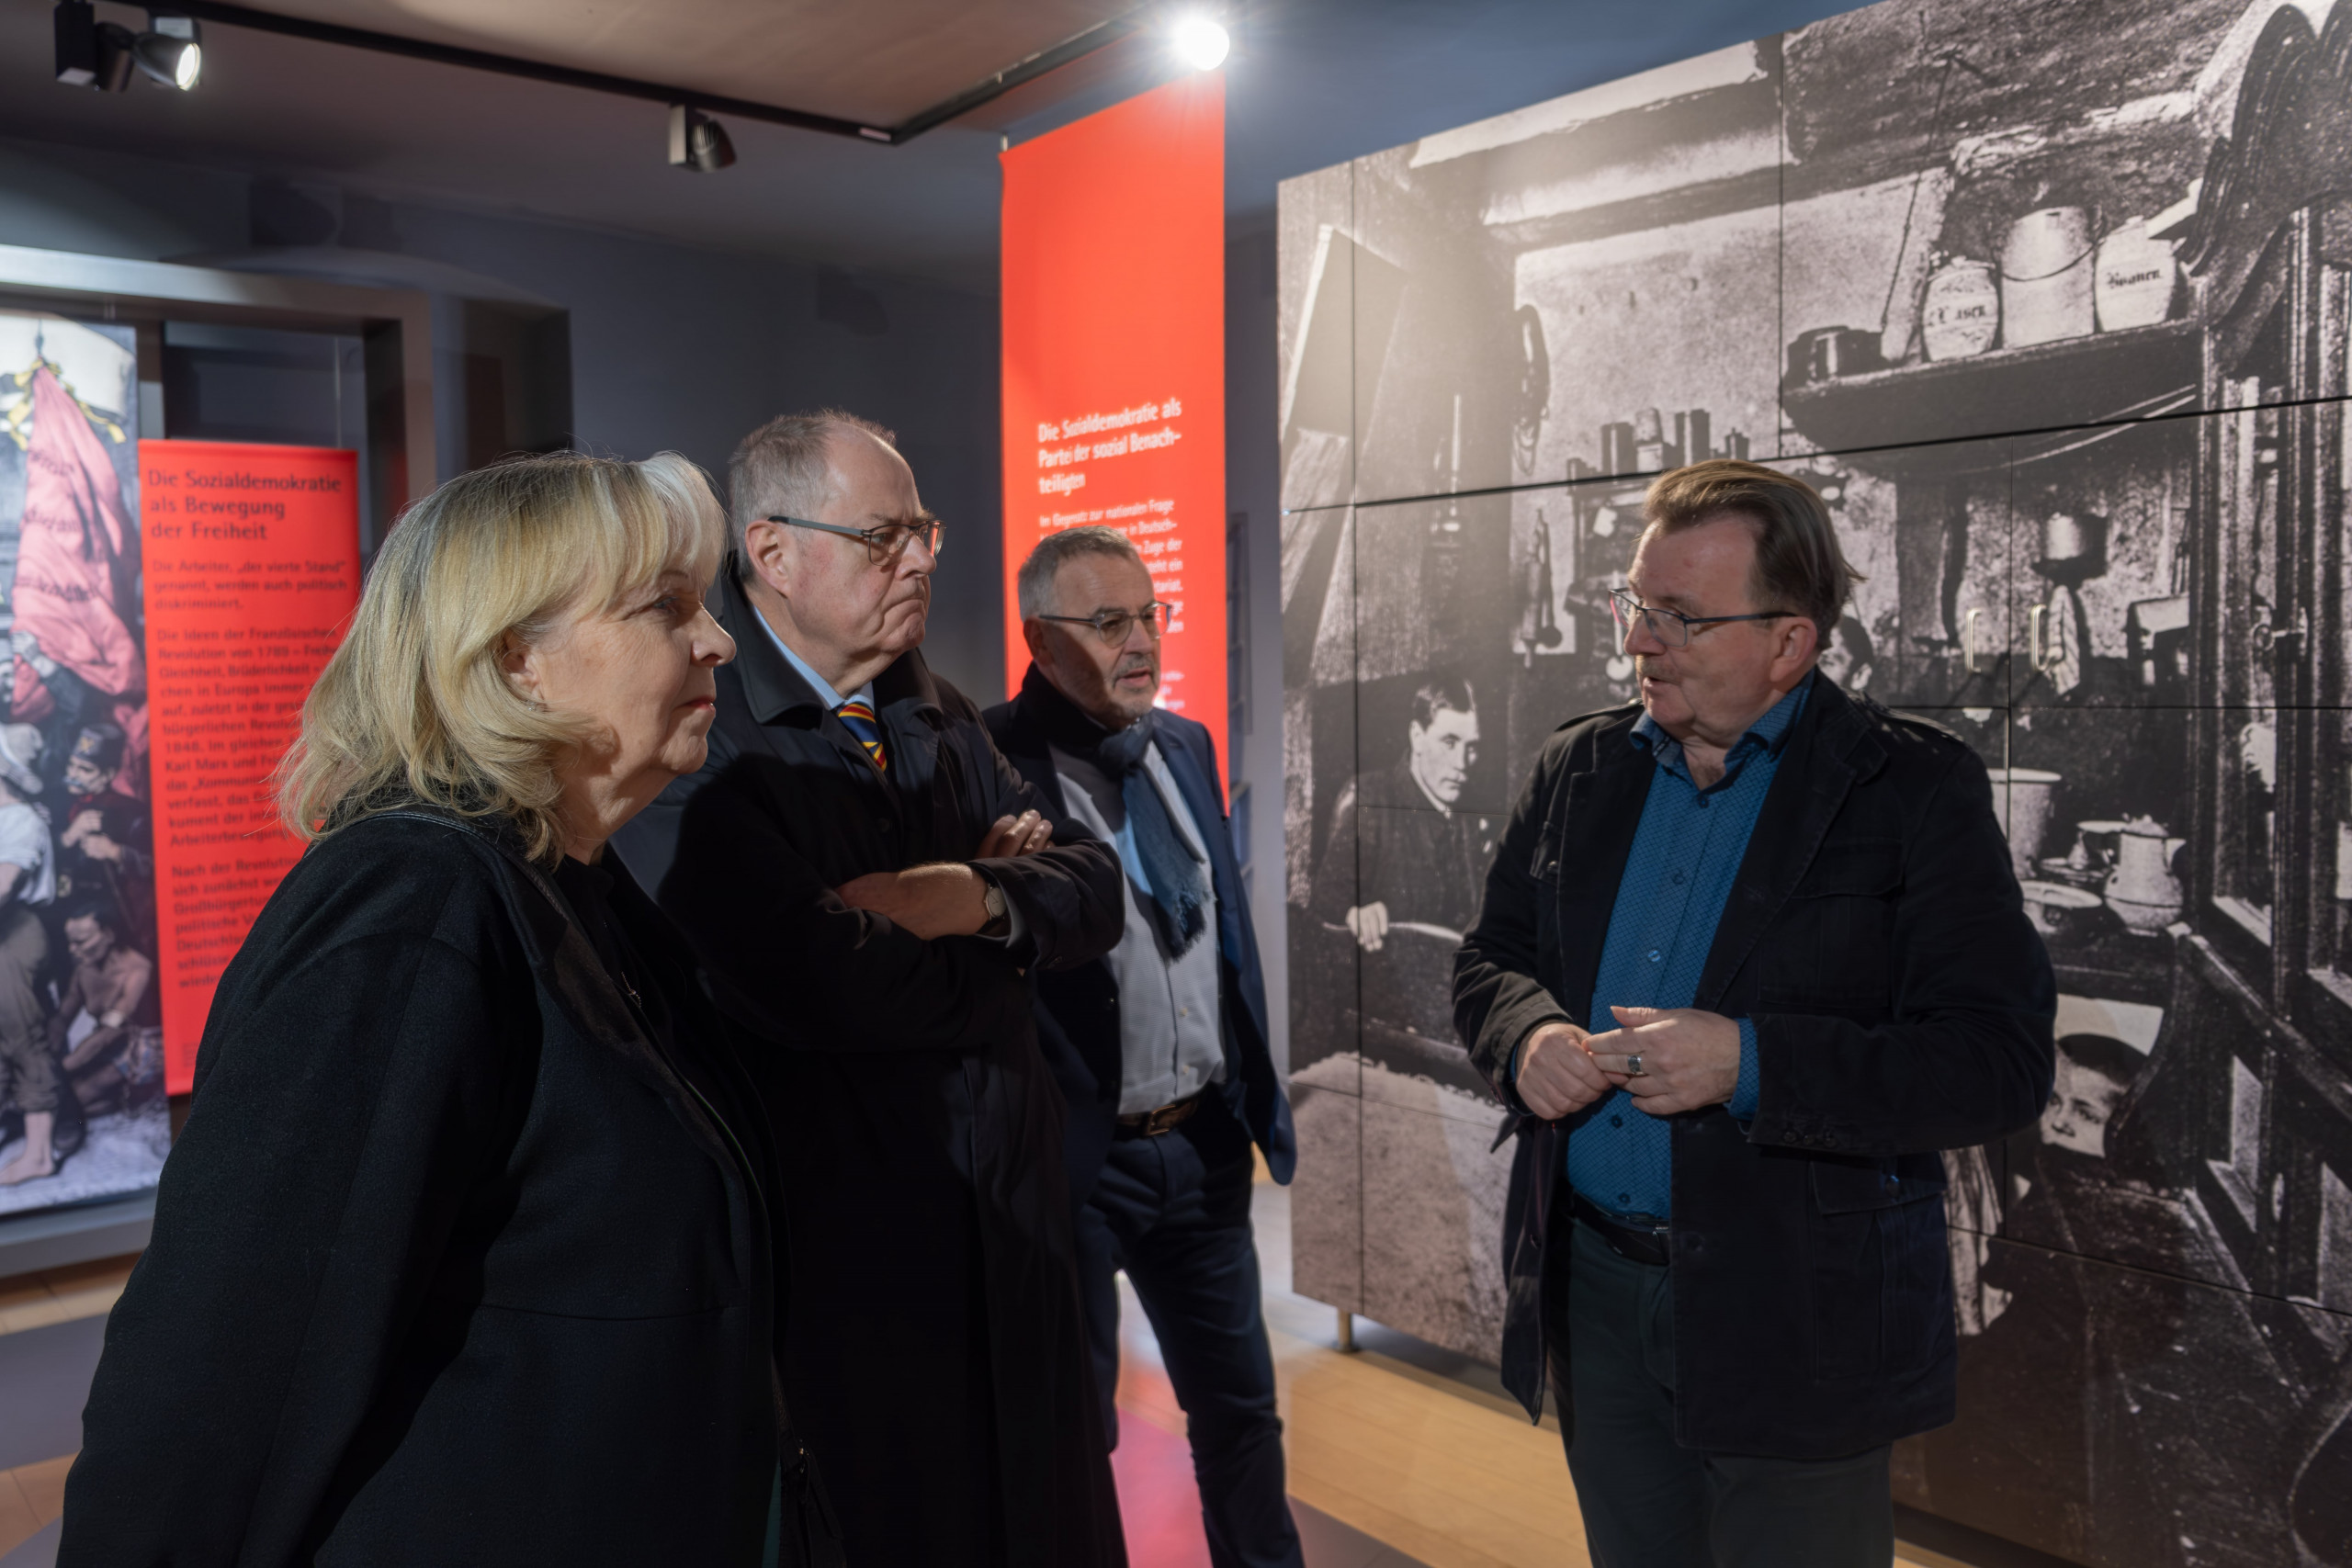 Hannelore Kraft, Peer Steinbrück, Günter Schmitteckert und Bernd Braun in der Dauerausstellung im Friedrich-Ebert-Haus